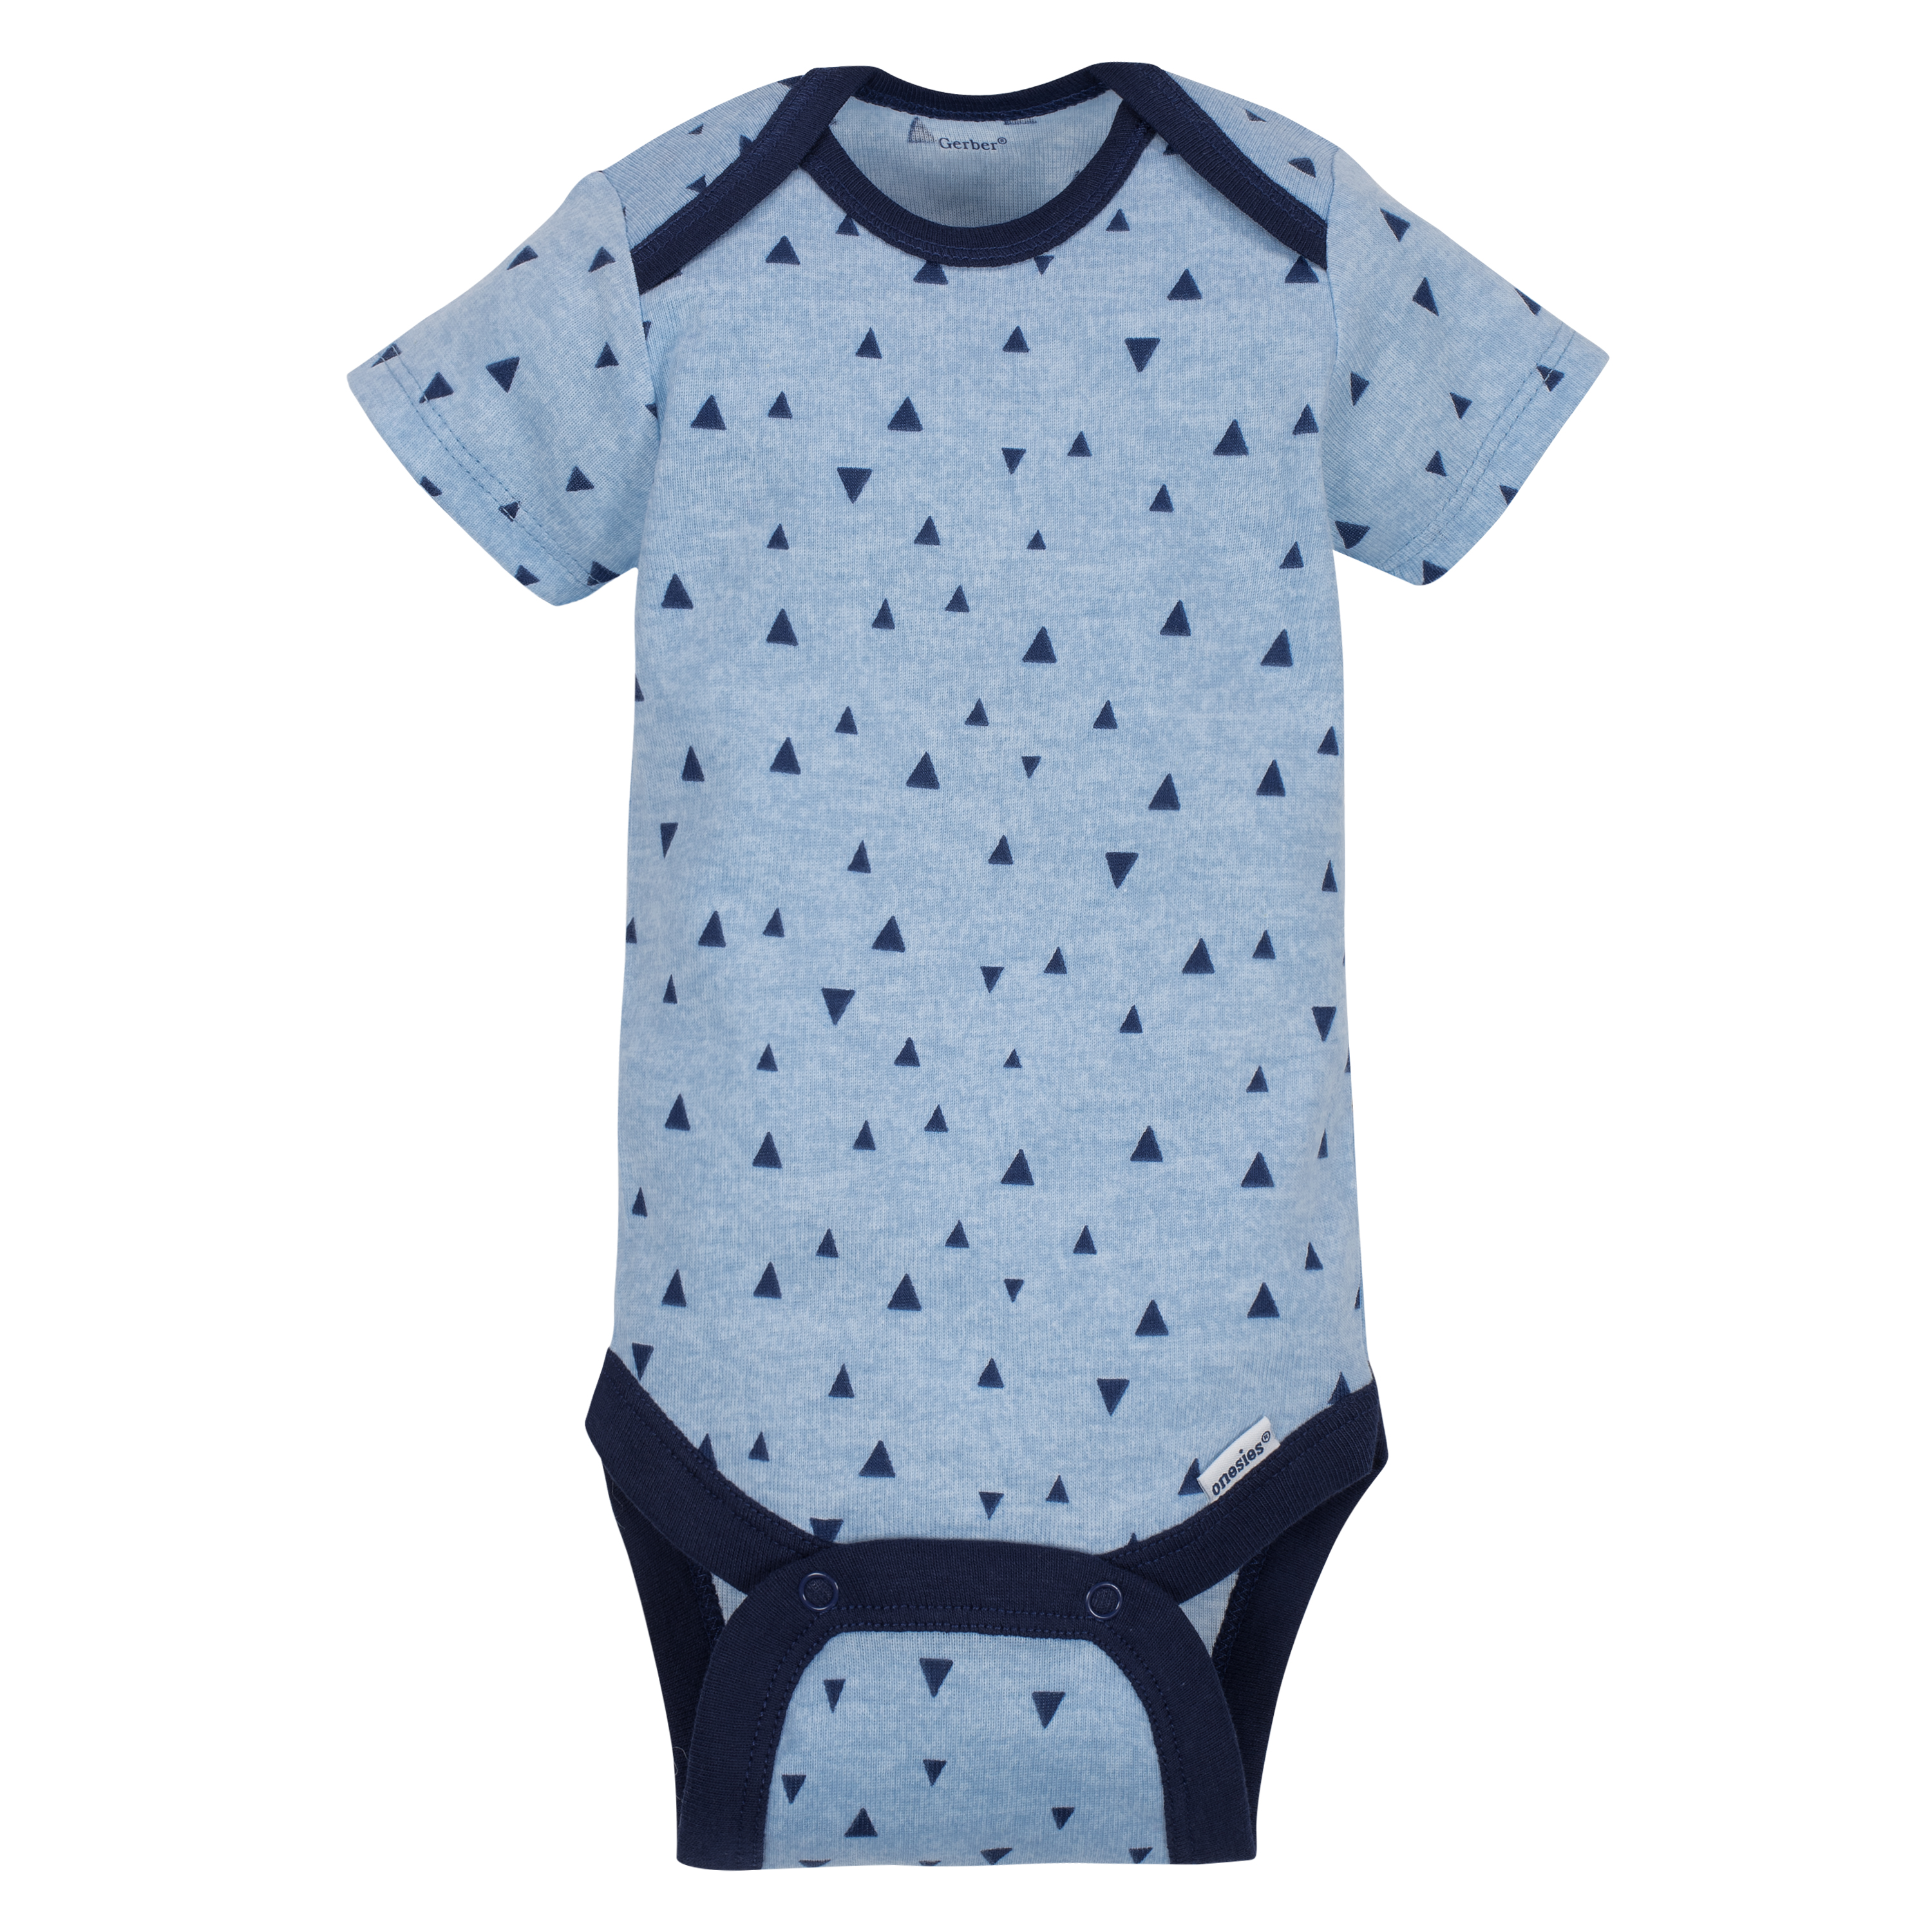 Gerber Baby Boy Short Sleeve Onesies Bodysuits, 5-Pack - image 5 of 11